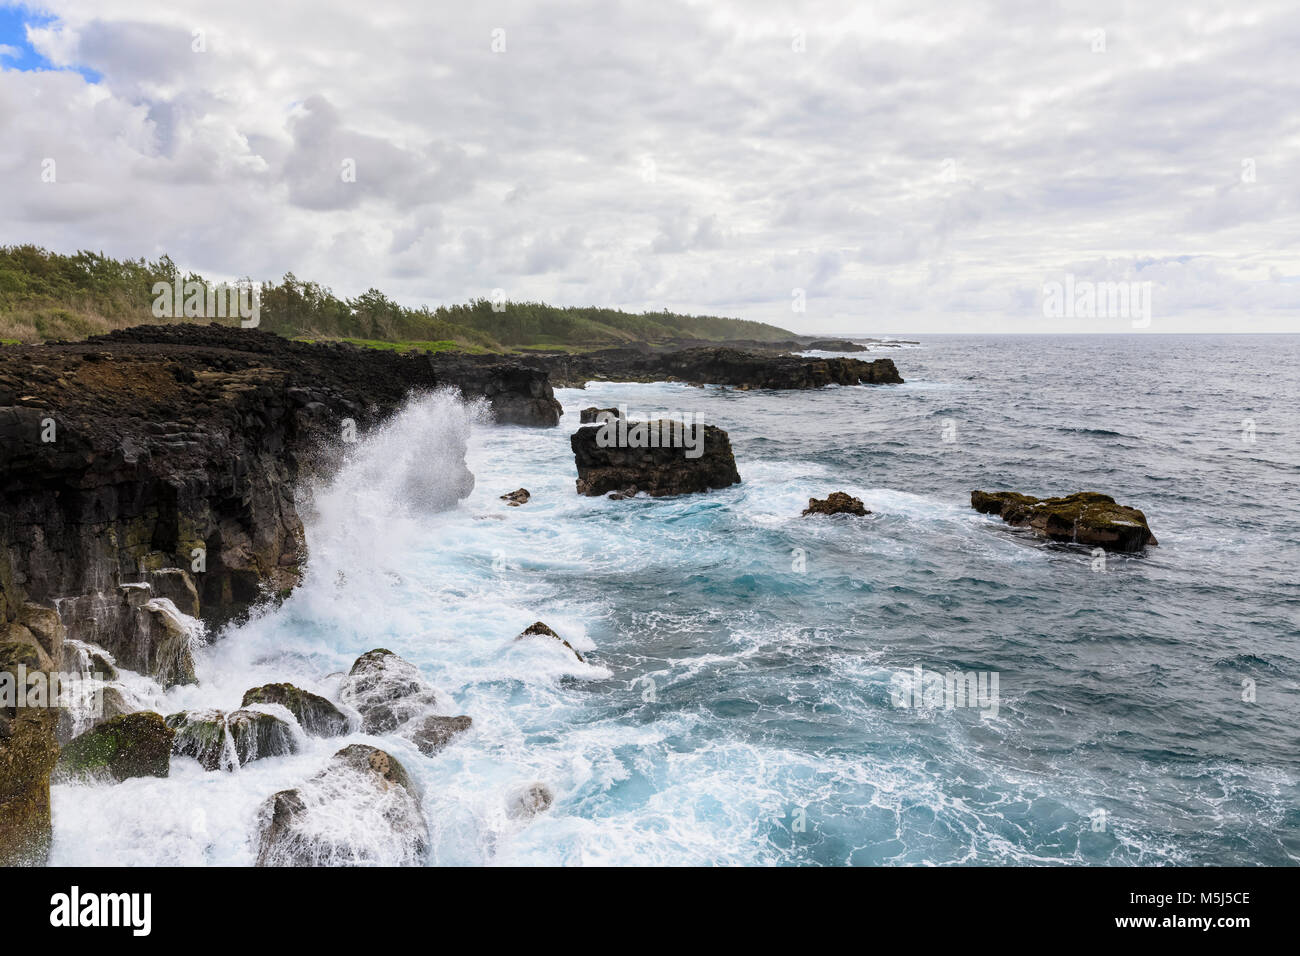 Mauritius, South Coast, Indian Ocean, Coast at Pont Naturel Stock Photo